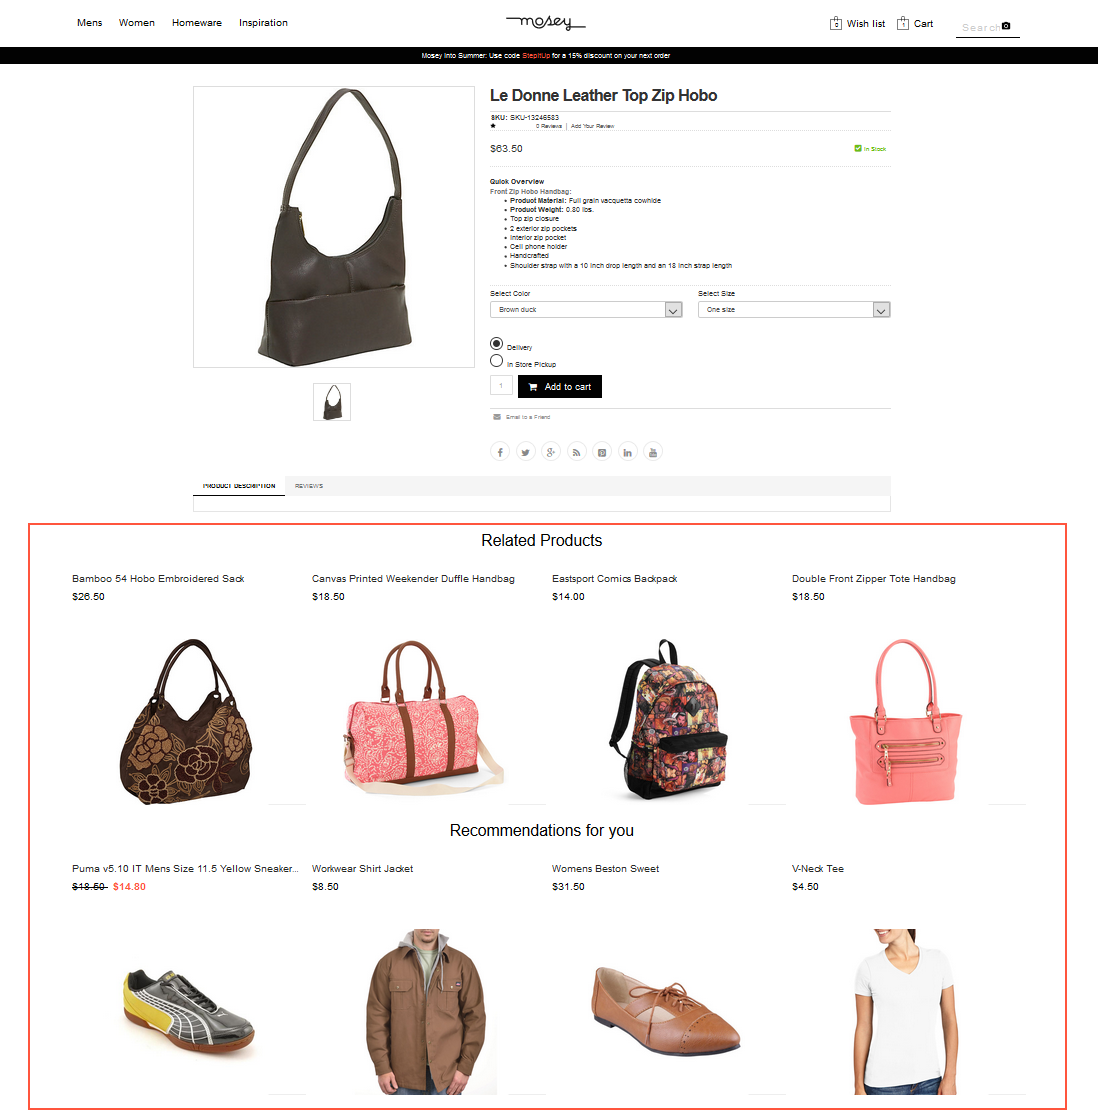 Bild: Product Recommendations auf einer Shop-Seite